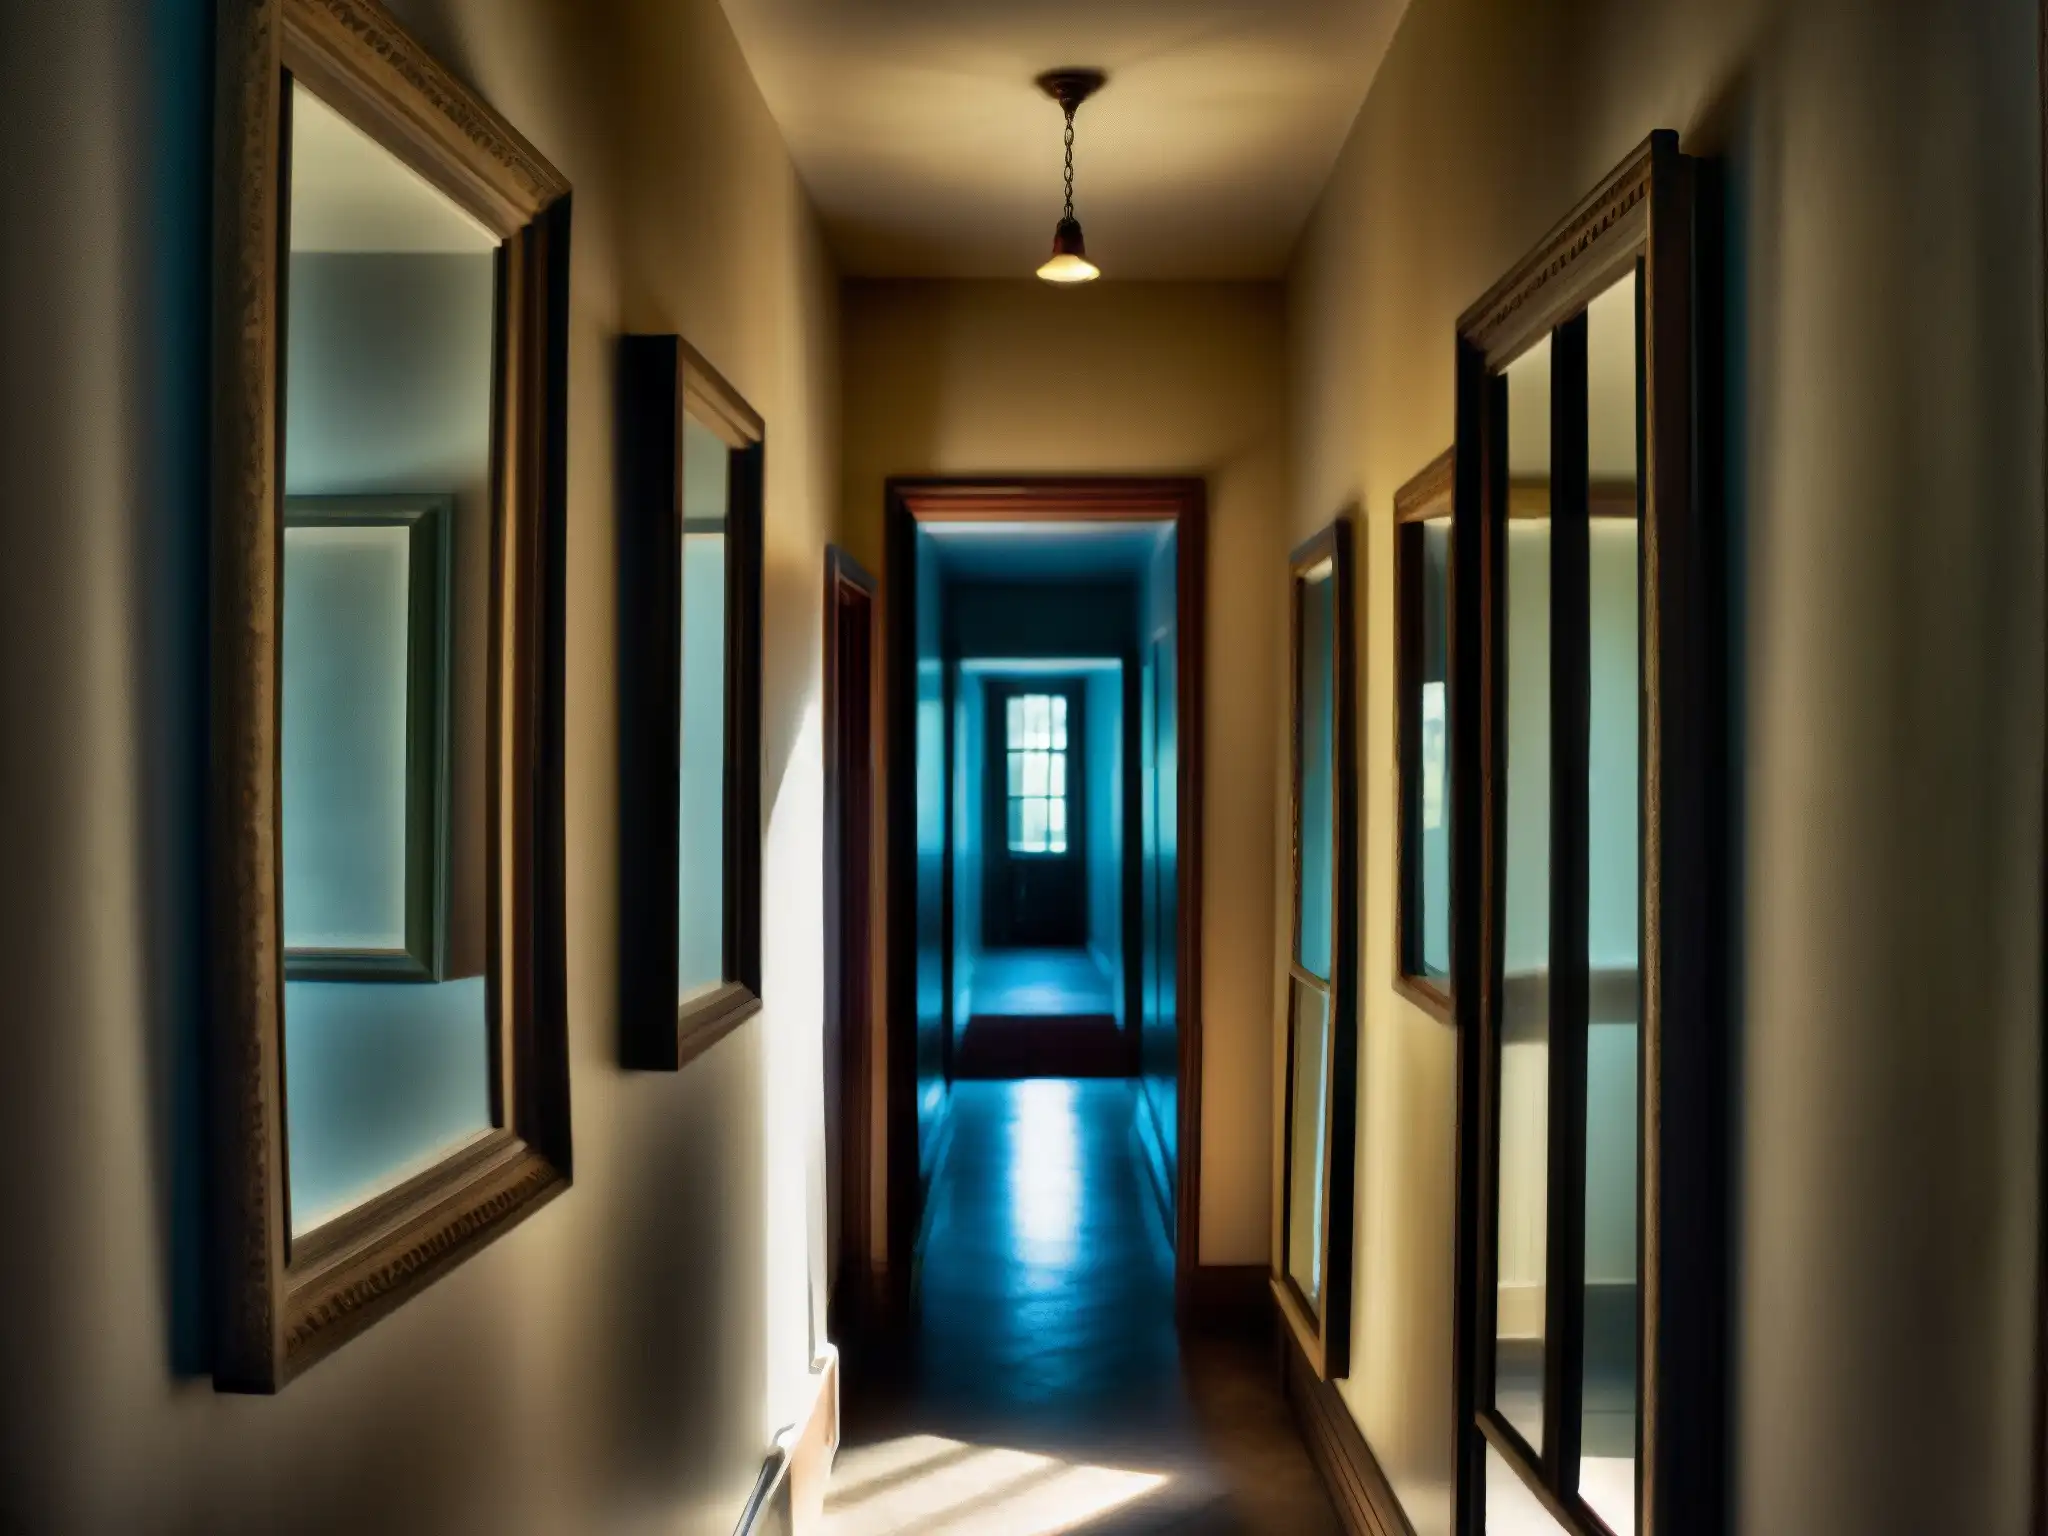 Un pasillo sombrío y misterioso en La Casa de los Espejos, con antiguos espejos que reflejan imágenes fantasmales y distorsionadas